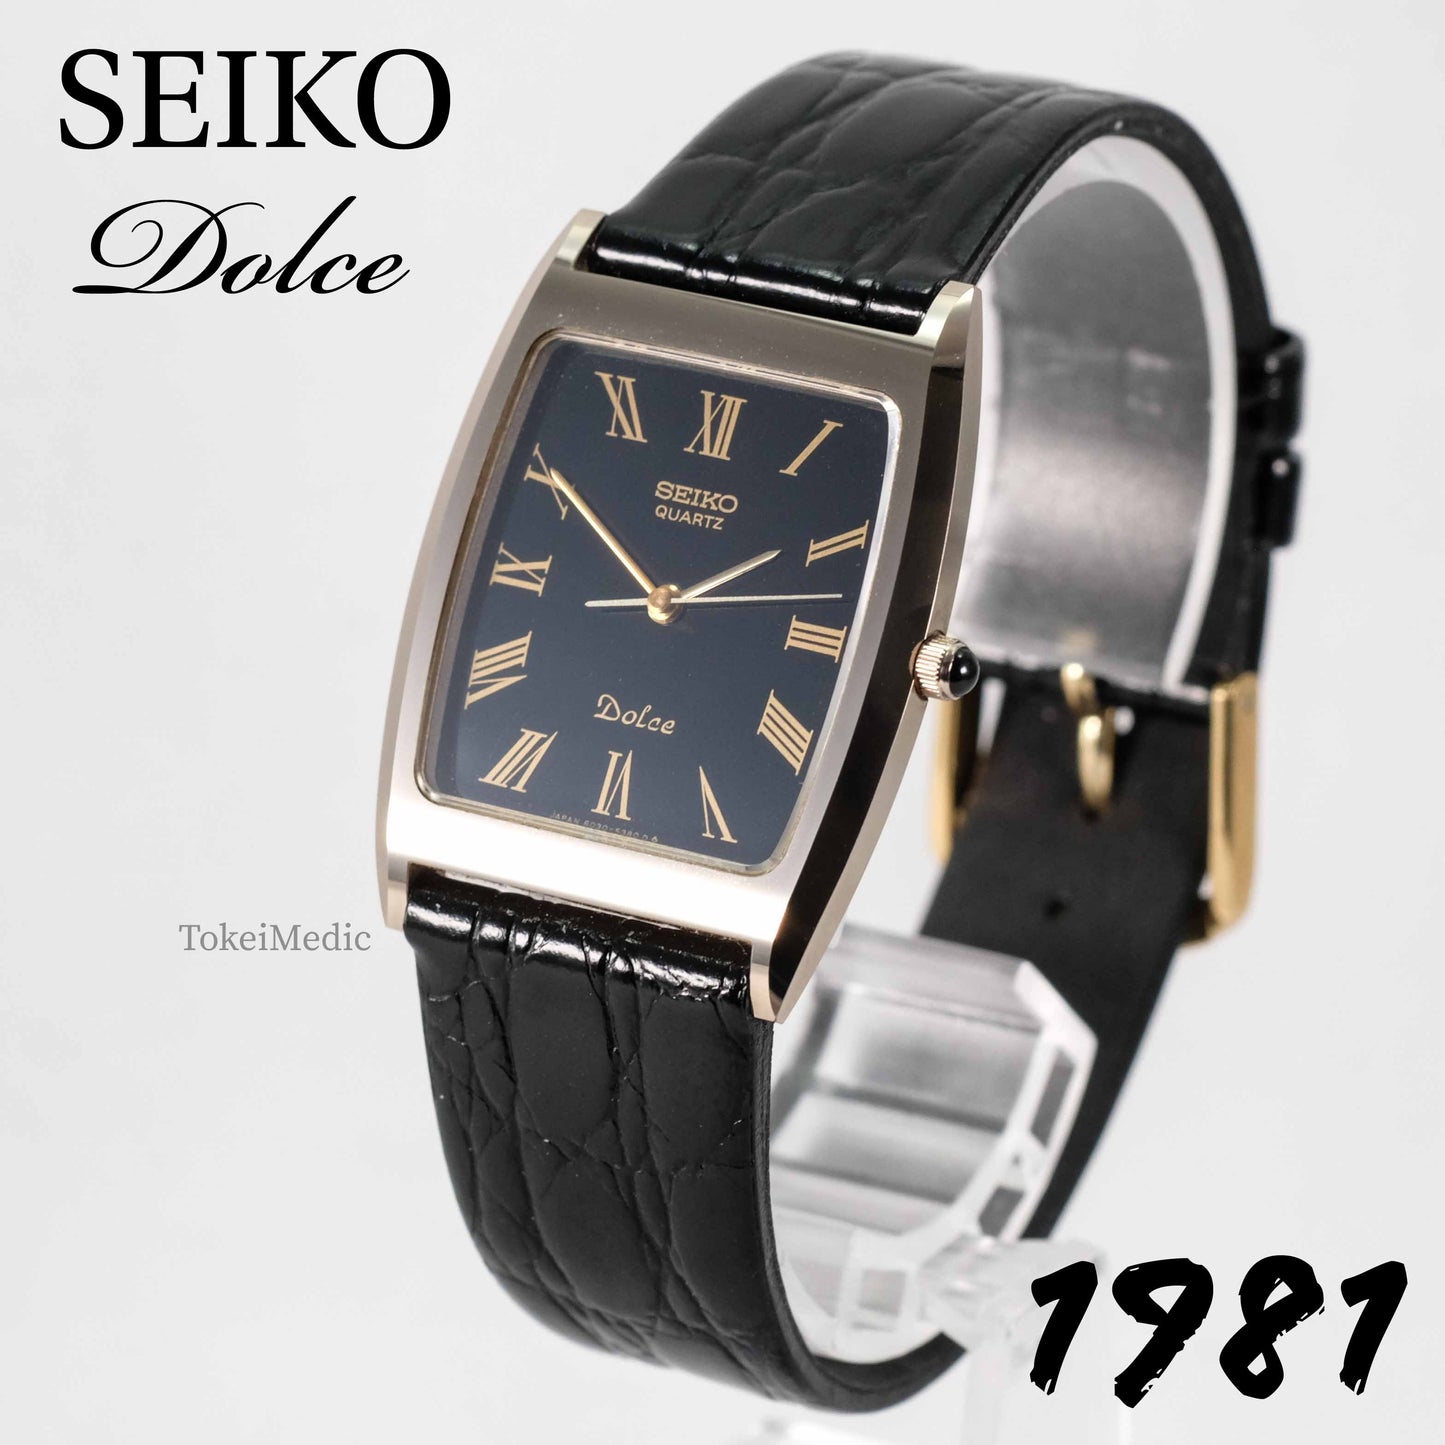 1981 Seiko Dolce 6030-5320